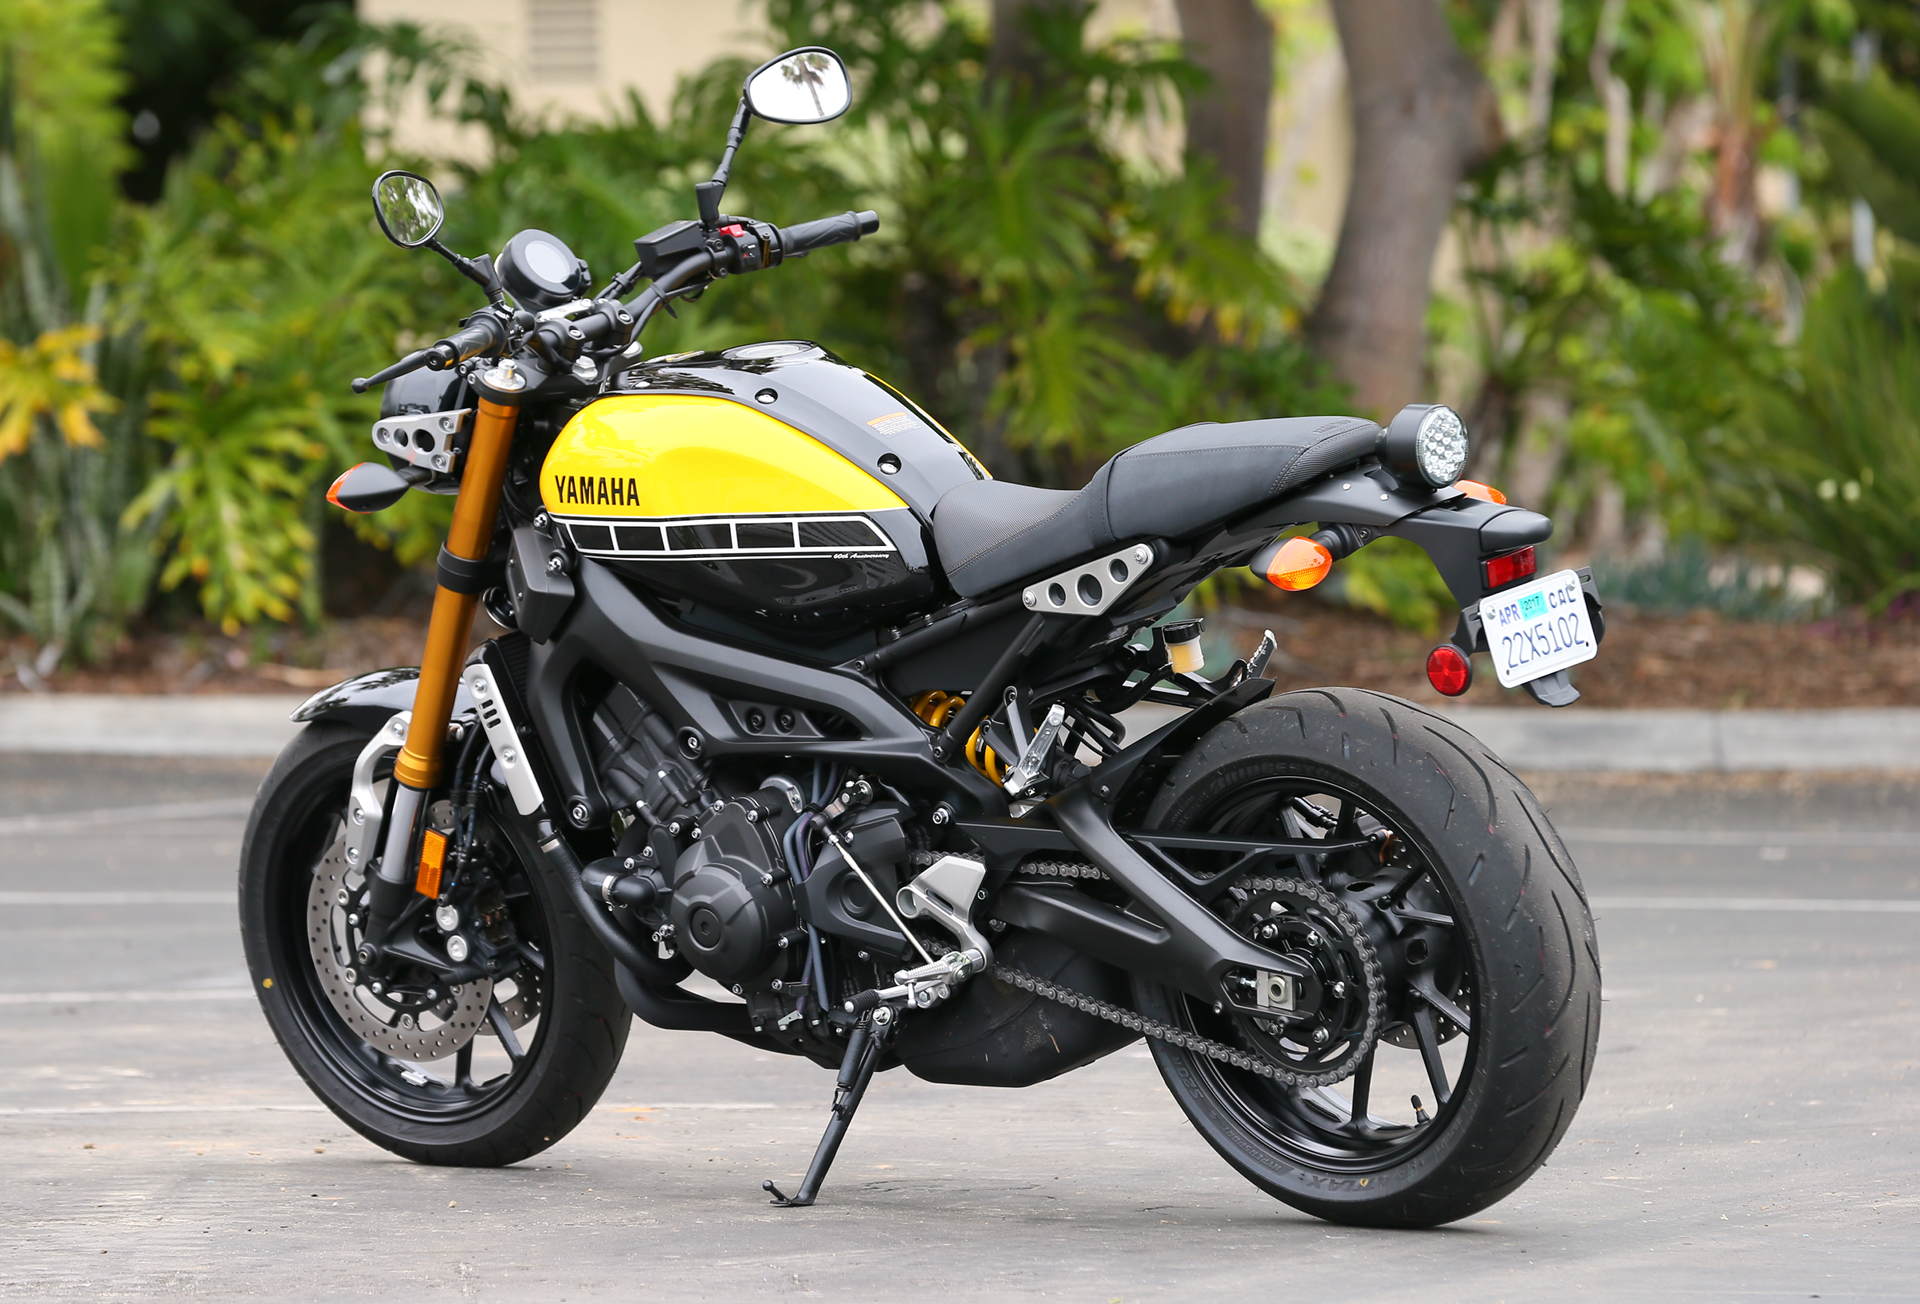 Yamaha XSR900 - best import motorcycle